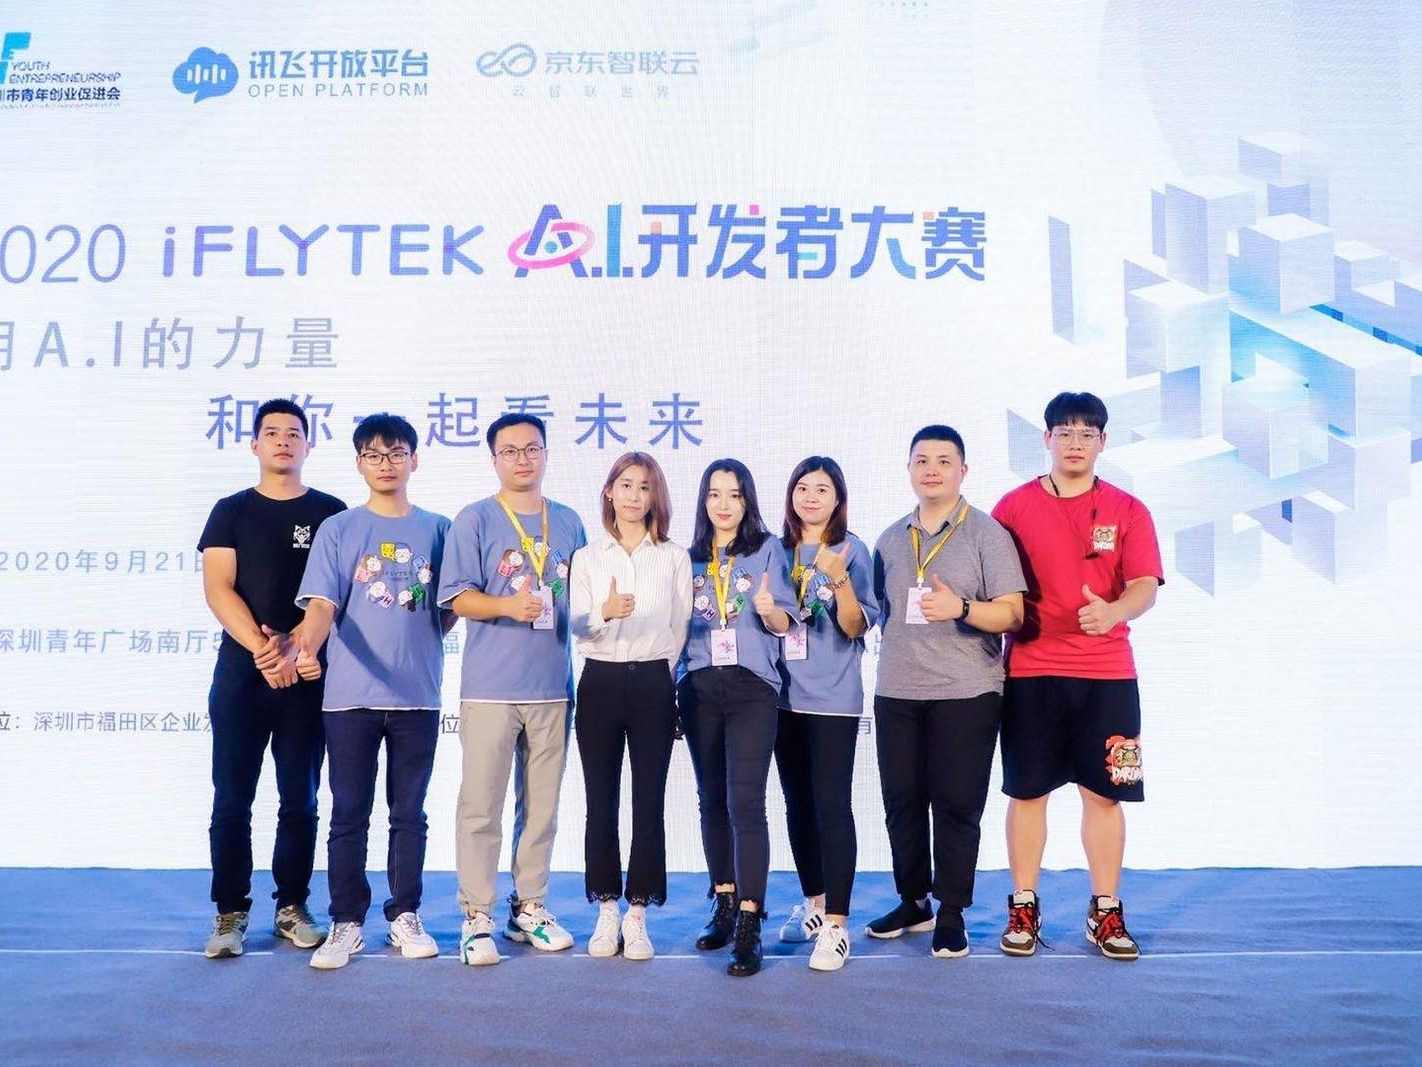 人工智能助推经济发展，2020A.I.开发者大赛21日在深圳举行